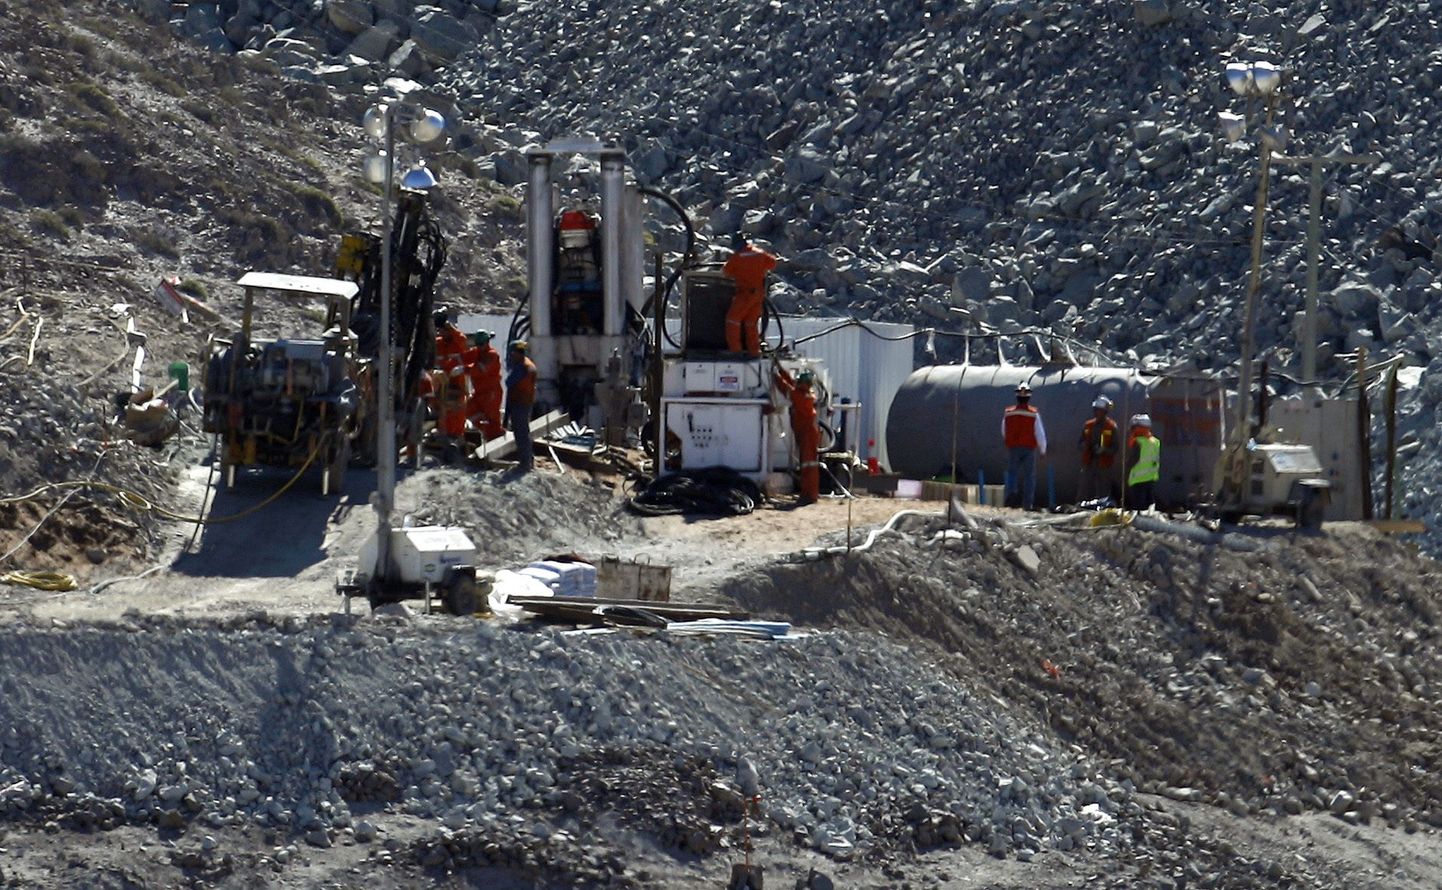 С помощью горнопроходческого щита, изготовленного в Германии, вчера начался первый этап освобождения 33 чудом выживших после обвала чилийских шахтеров, блокированных в золоторудной шахте Сан-Хосе на глубине около 700 метров.